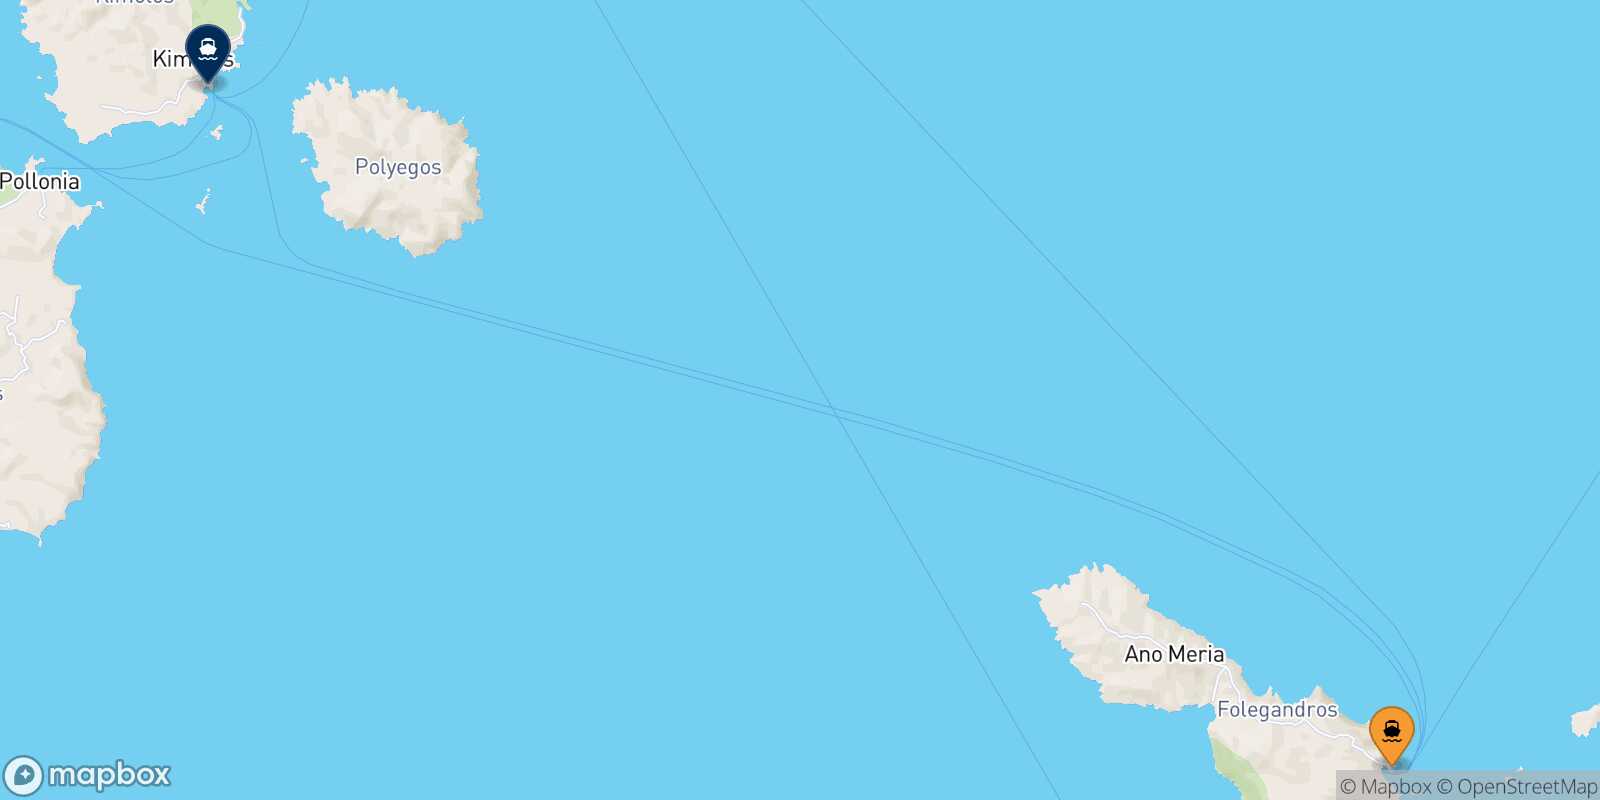 Folegandros Kimolos route map